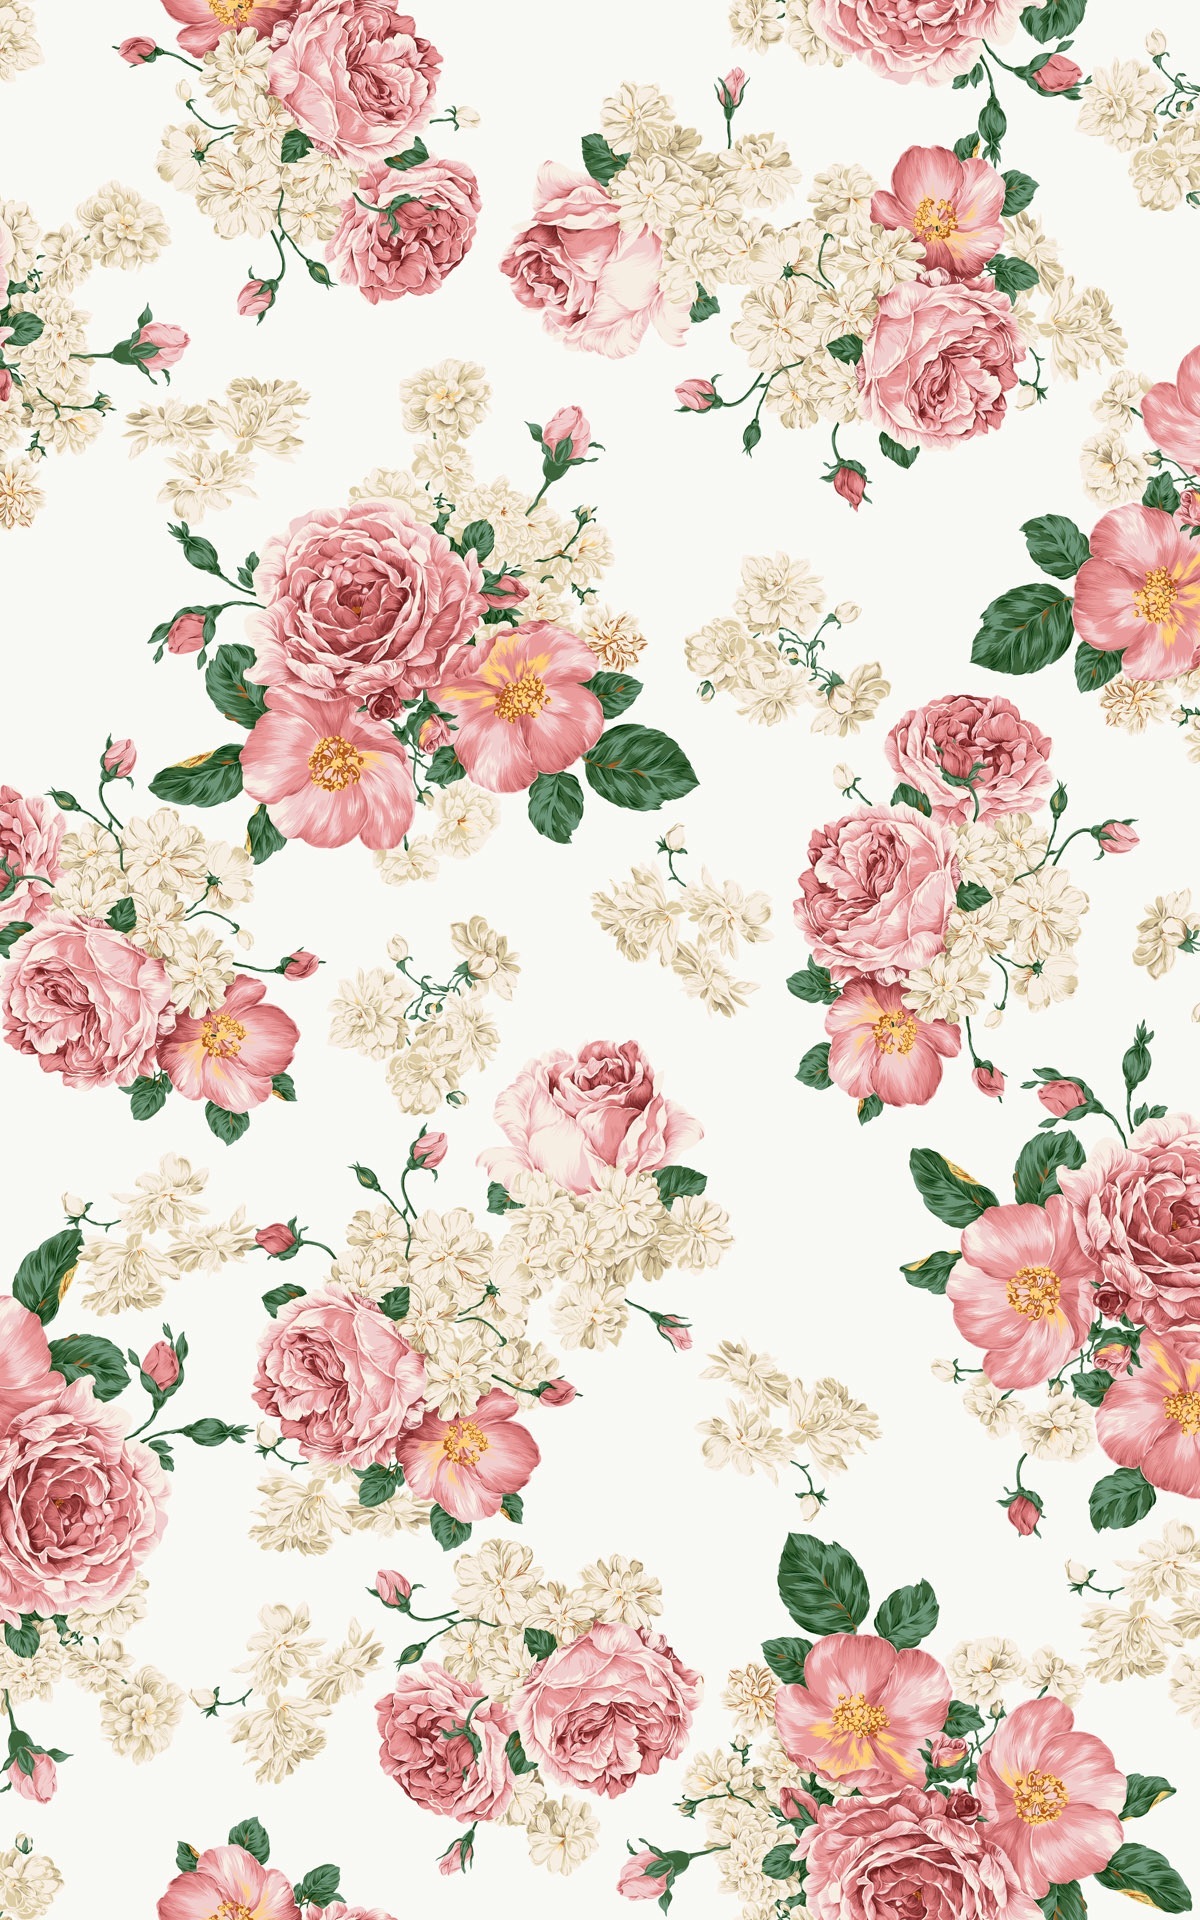 Flower tumblr wallpaper